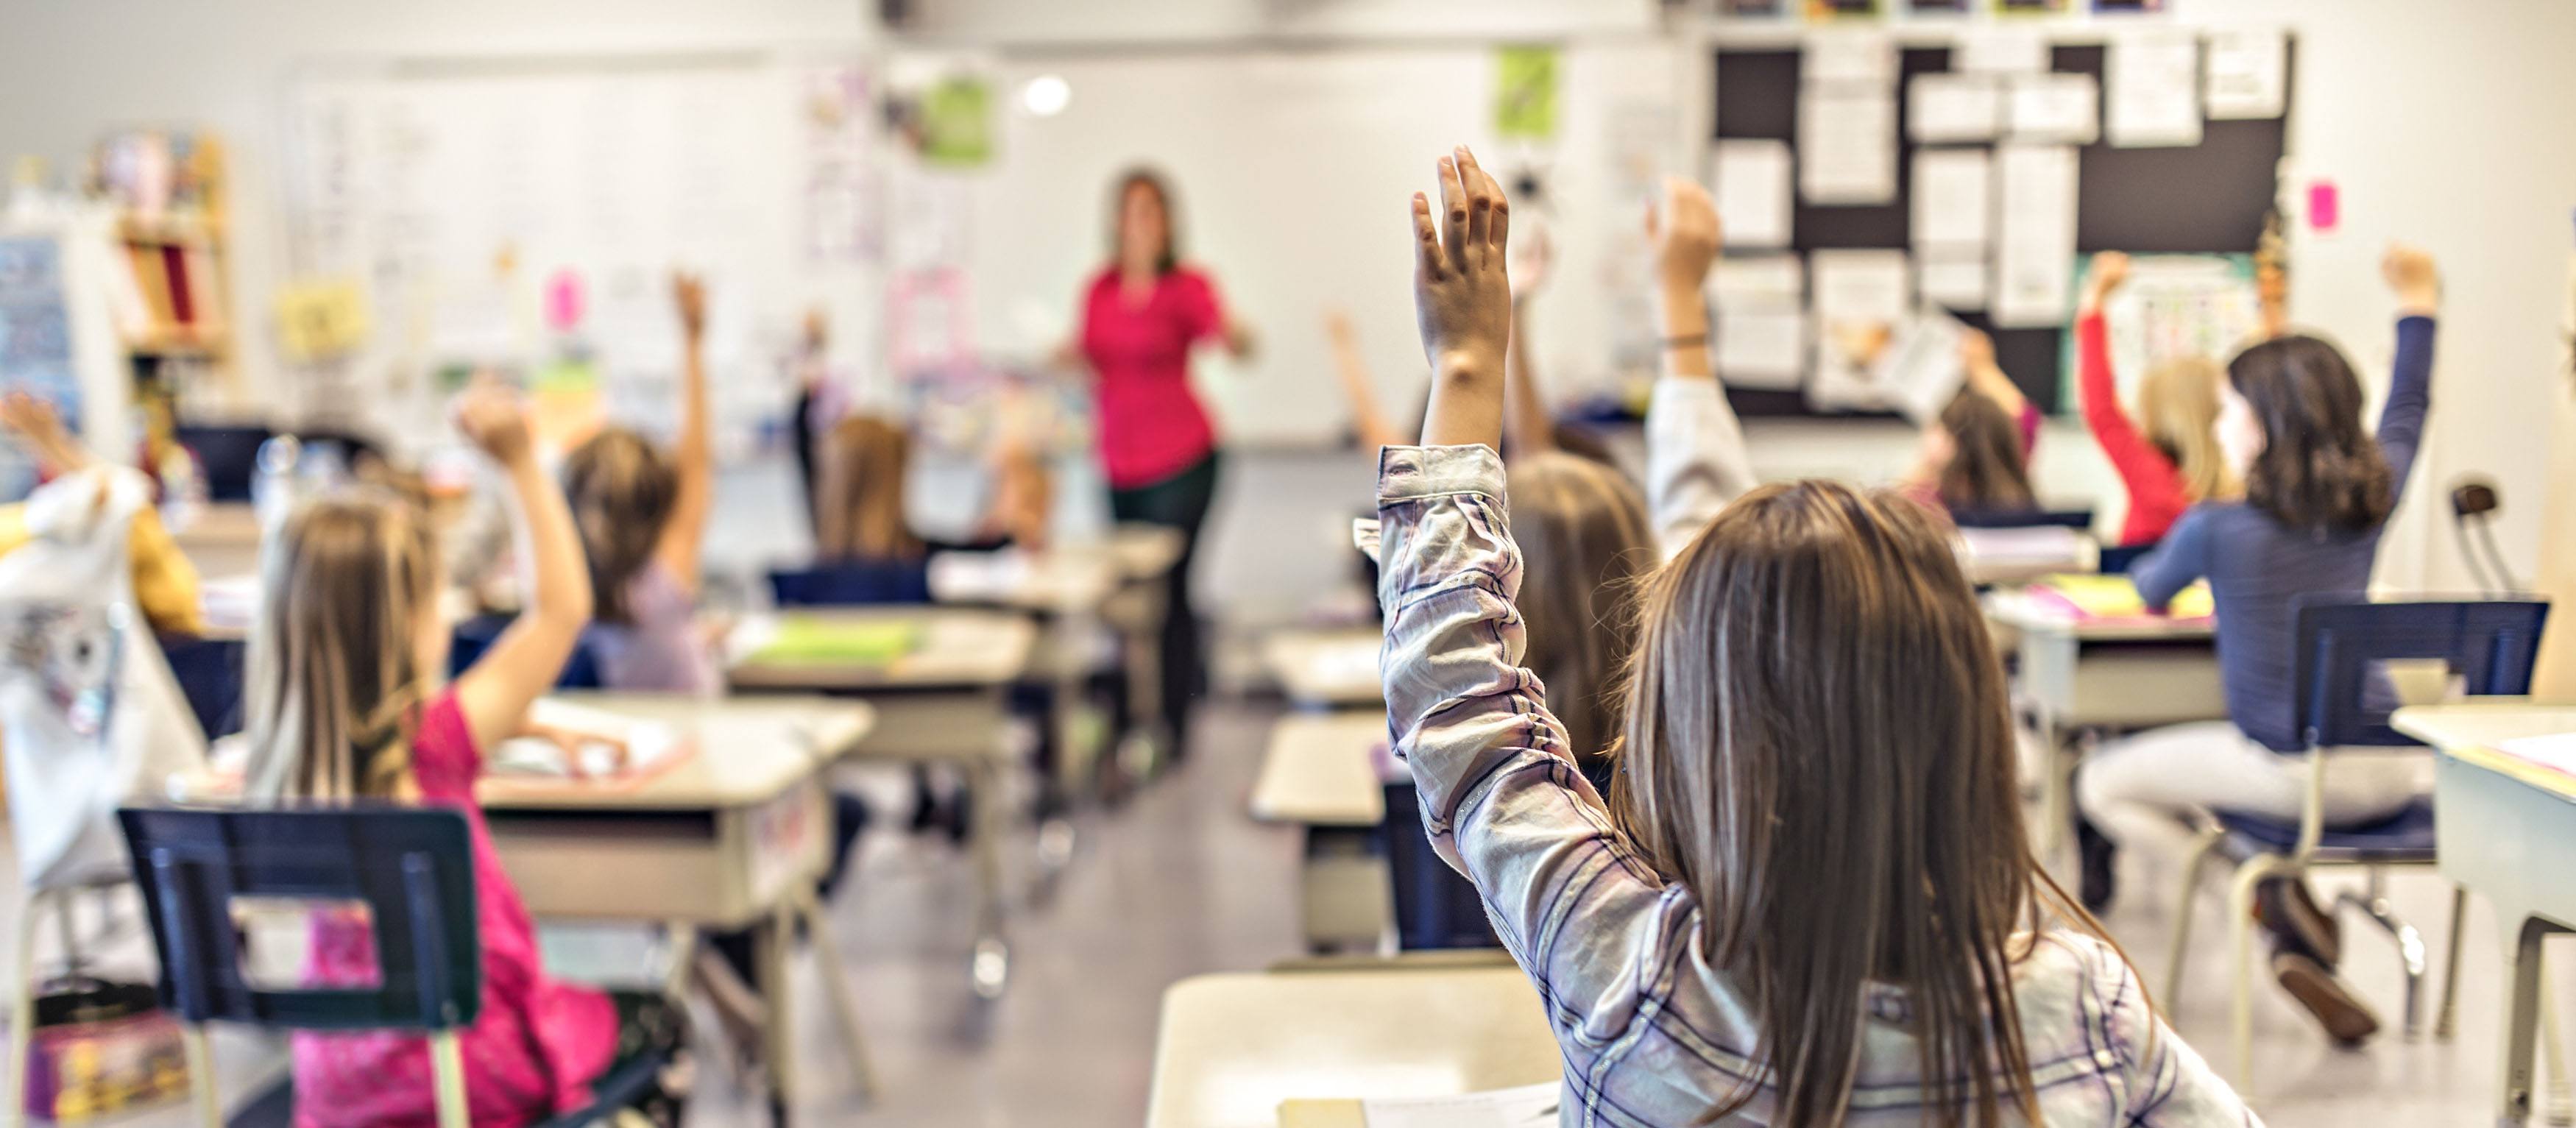 Elementary children at desks raising their hands in classroom